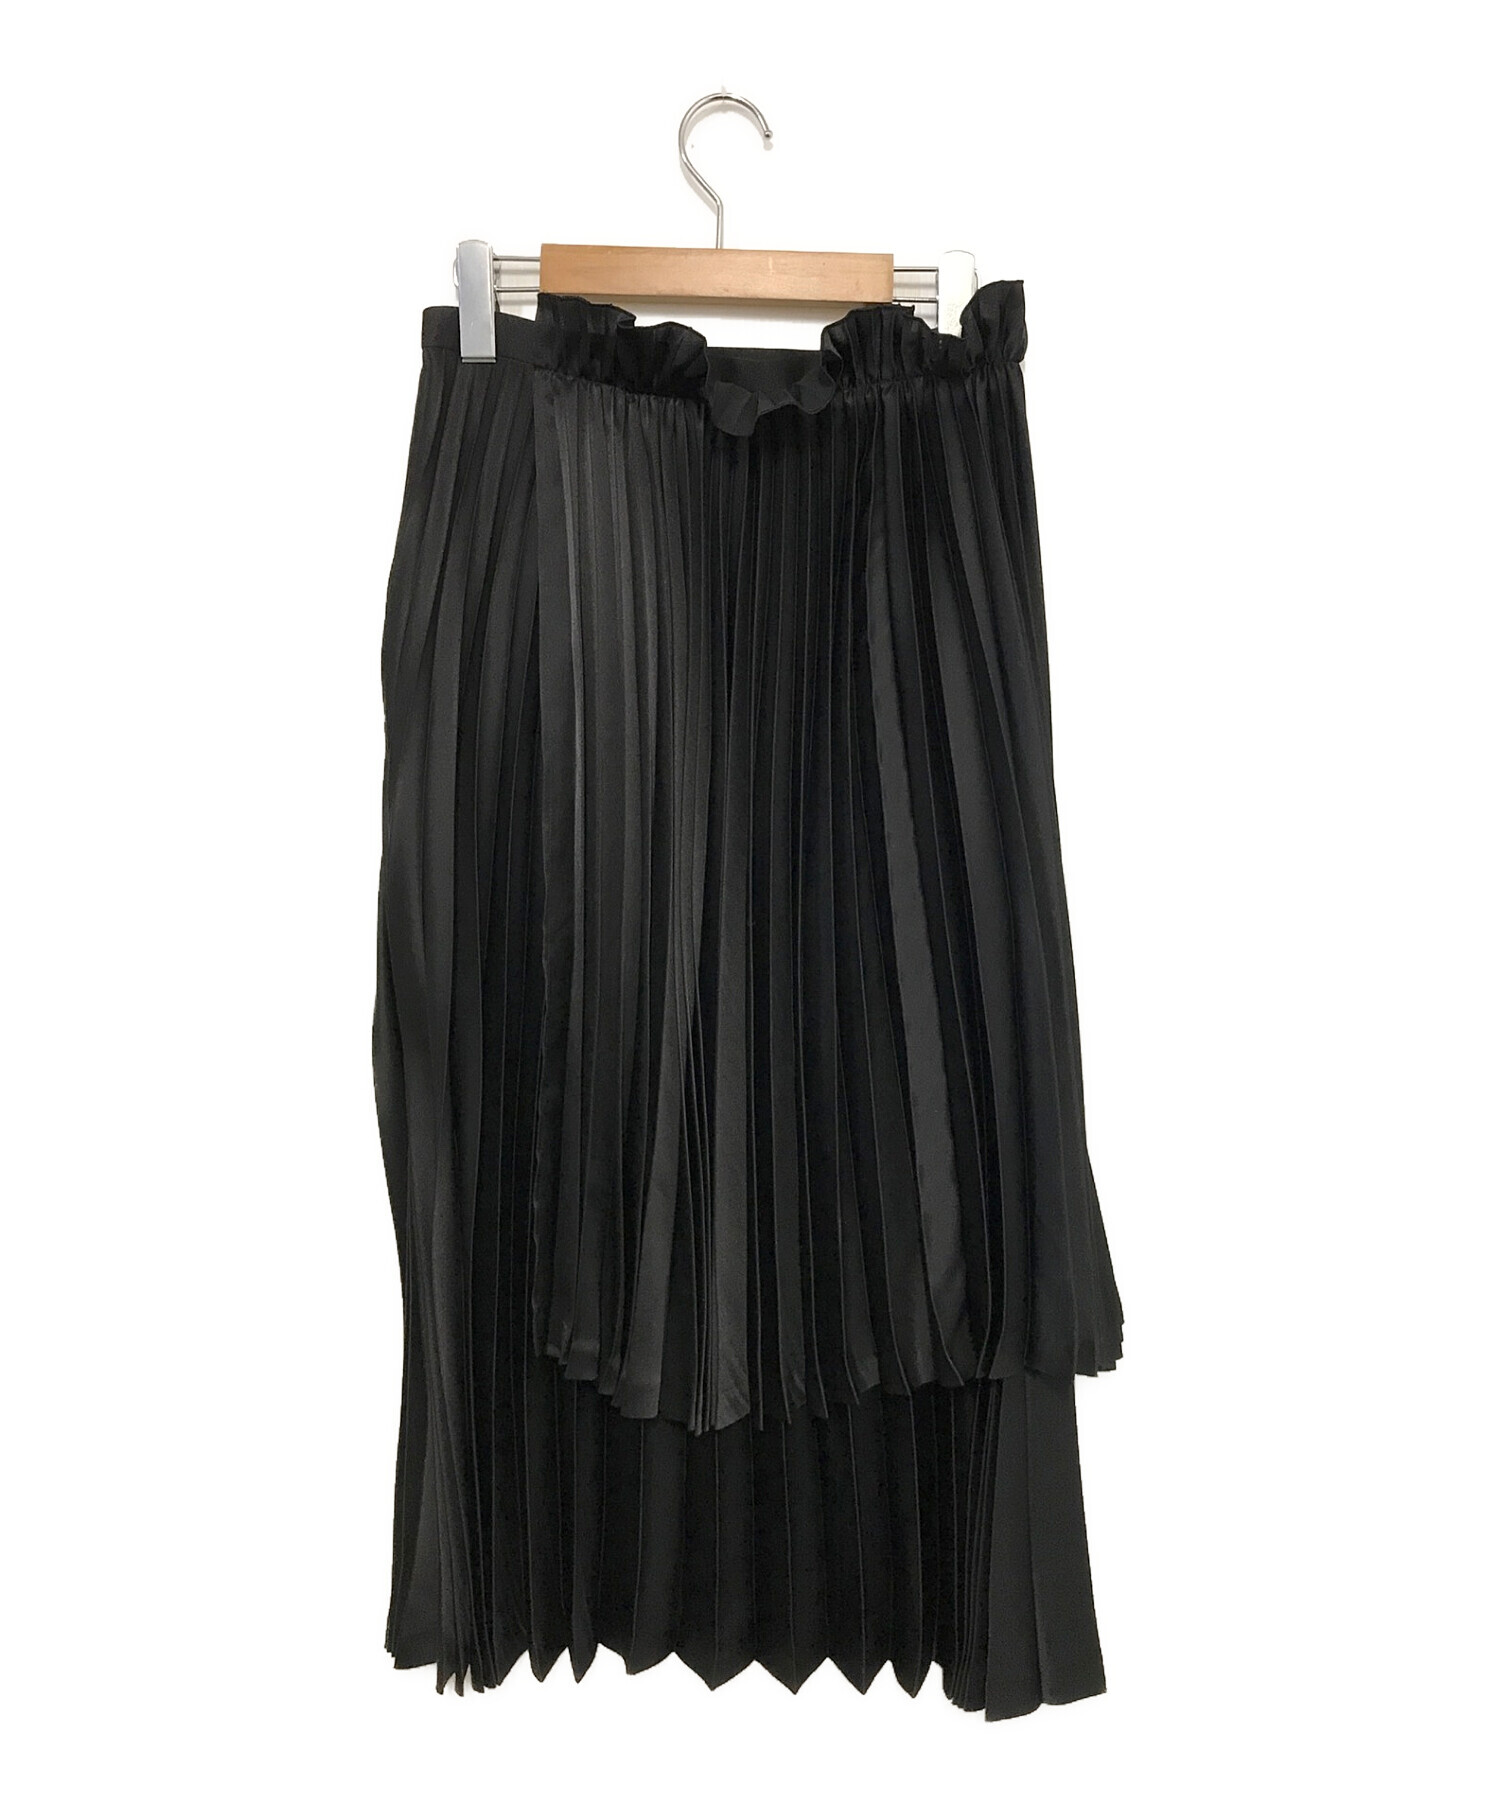 激安通販の noir kei ninomiya SZ-S003 ラップスカート ひざ丈スカート